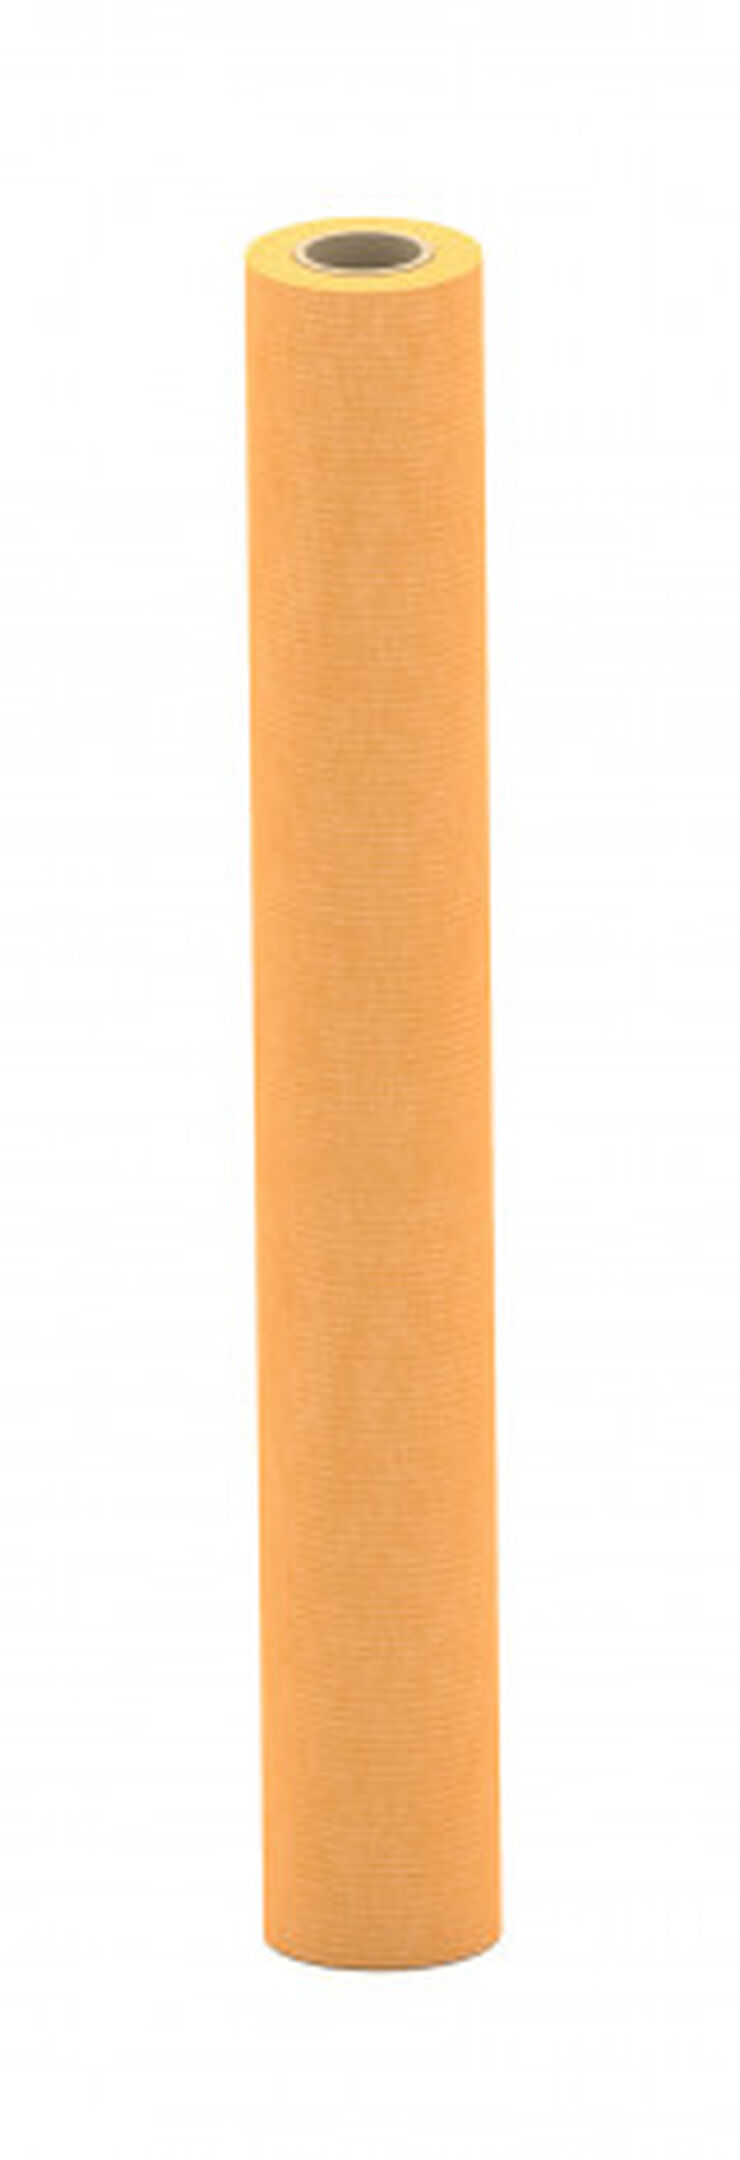 Bobina de Papel Kraft 1x50 m 90g Naranja